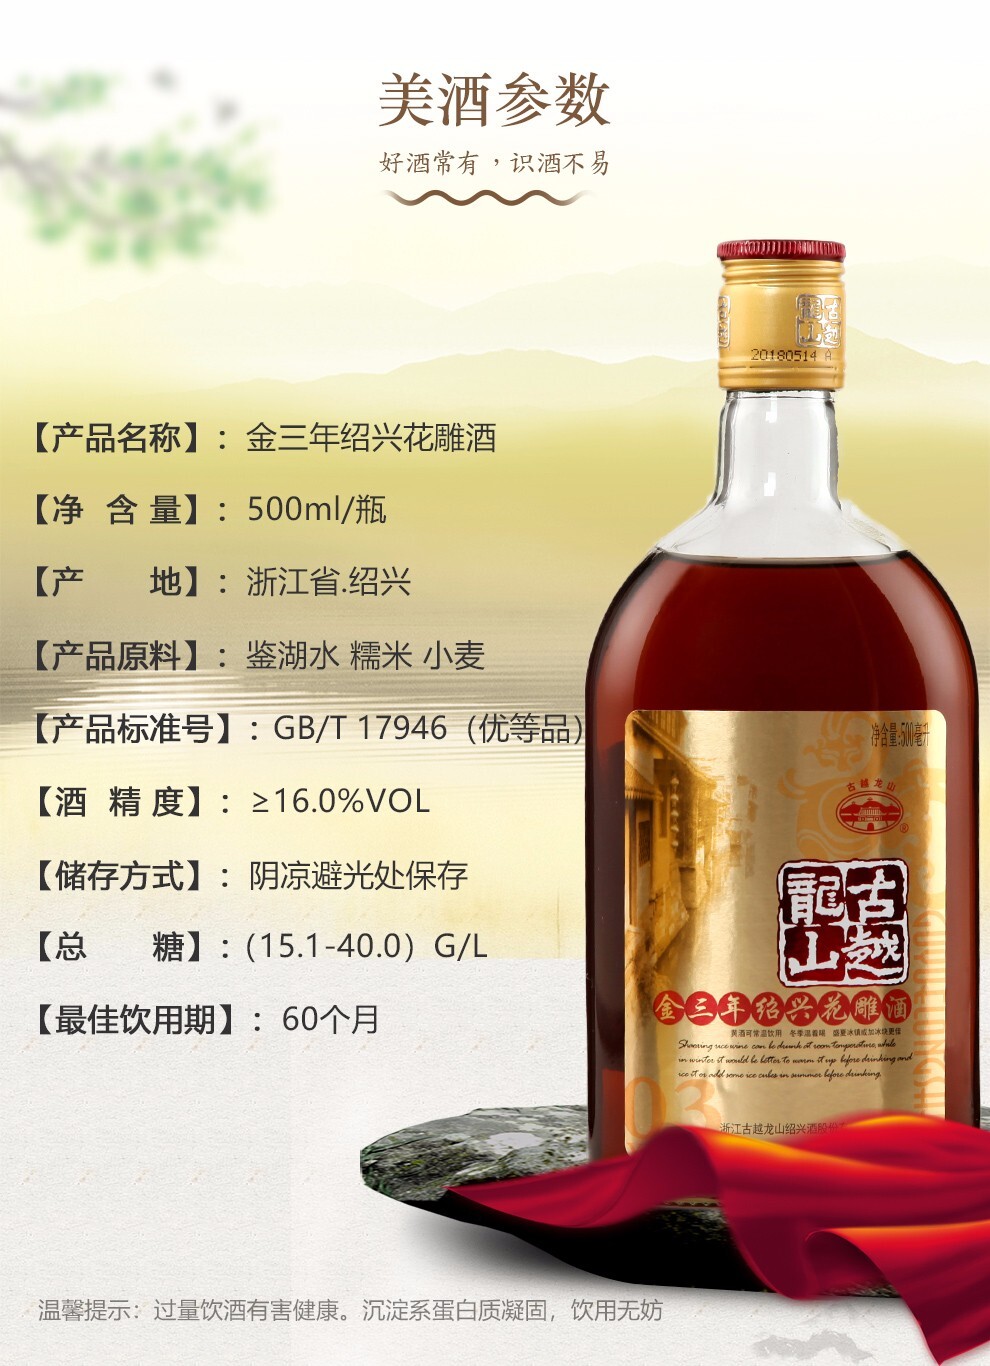 中国黄酒第一品牌 古越龙山 金盖版3年陈 绍兴黄酒花雕酒 500ml*6瓶